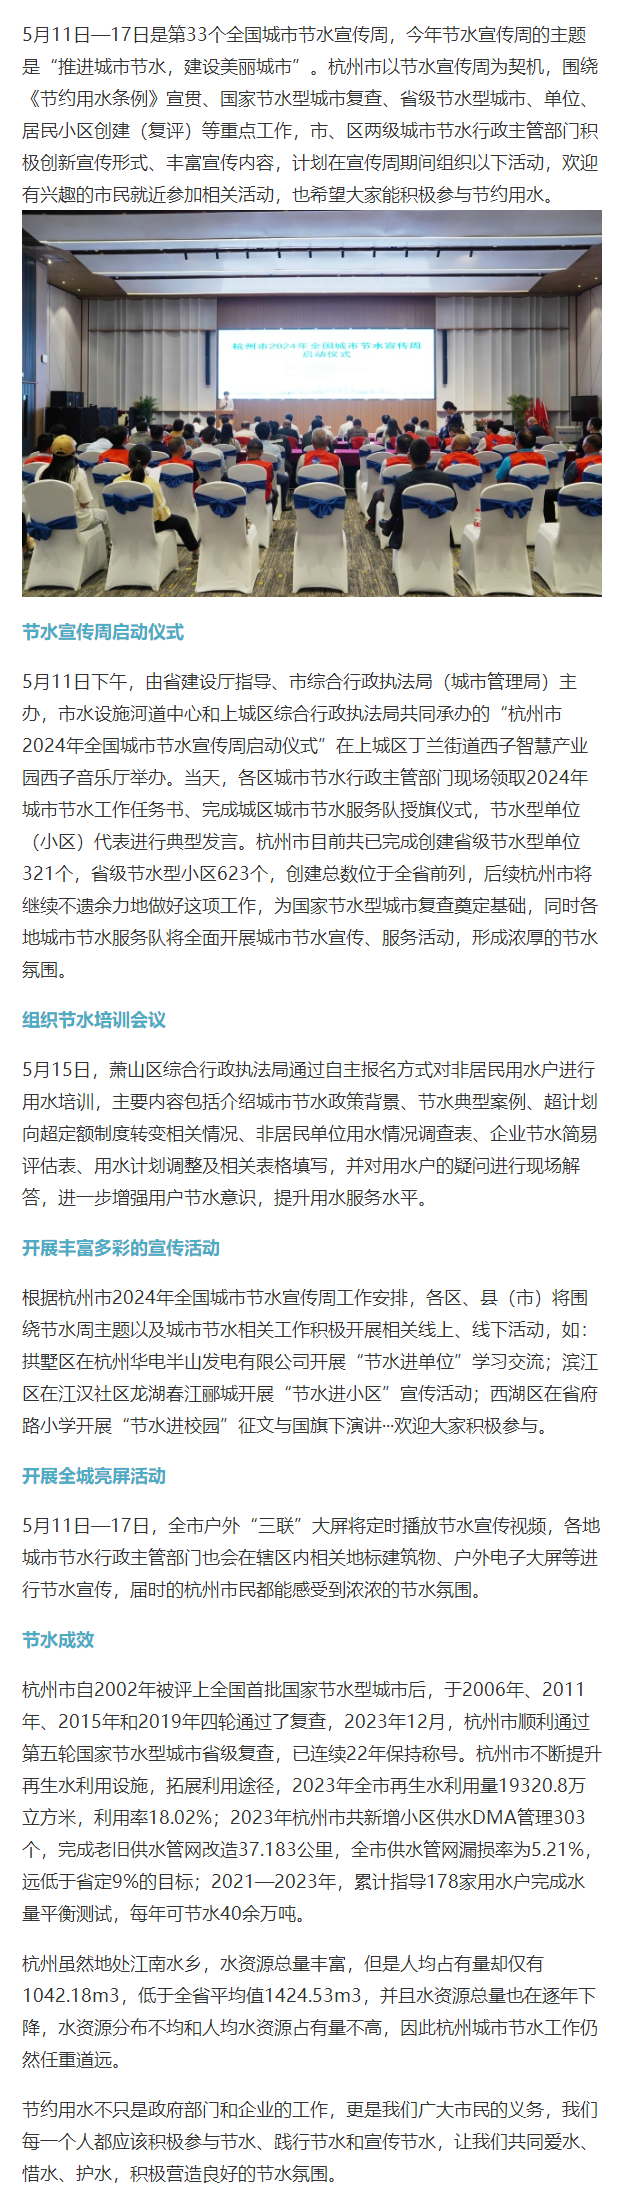 杭州市2024年全国城市节水宣传周正式启动.png